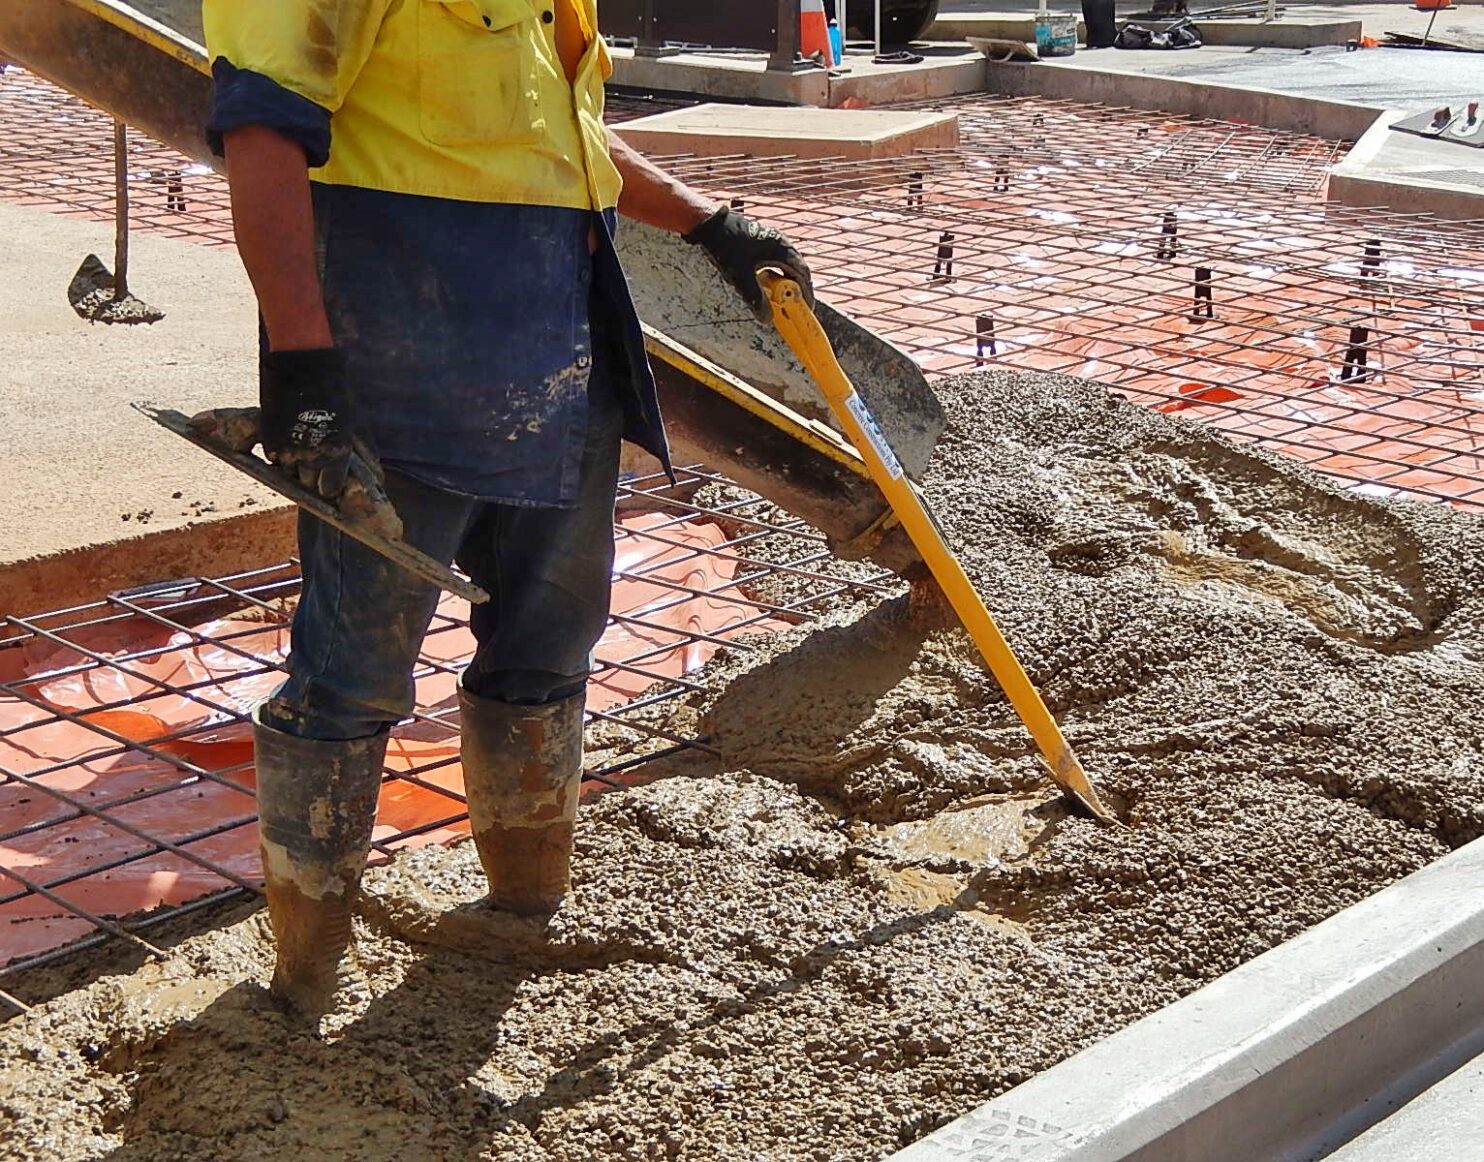 Construction worker pouring concrete